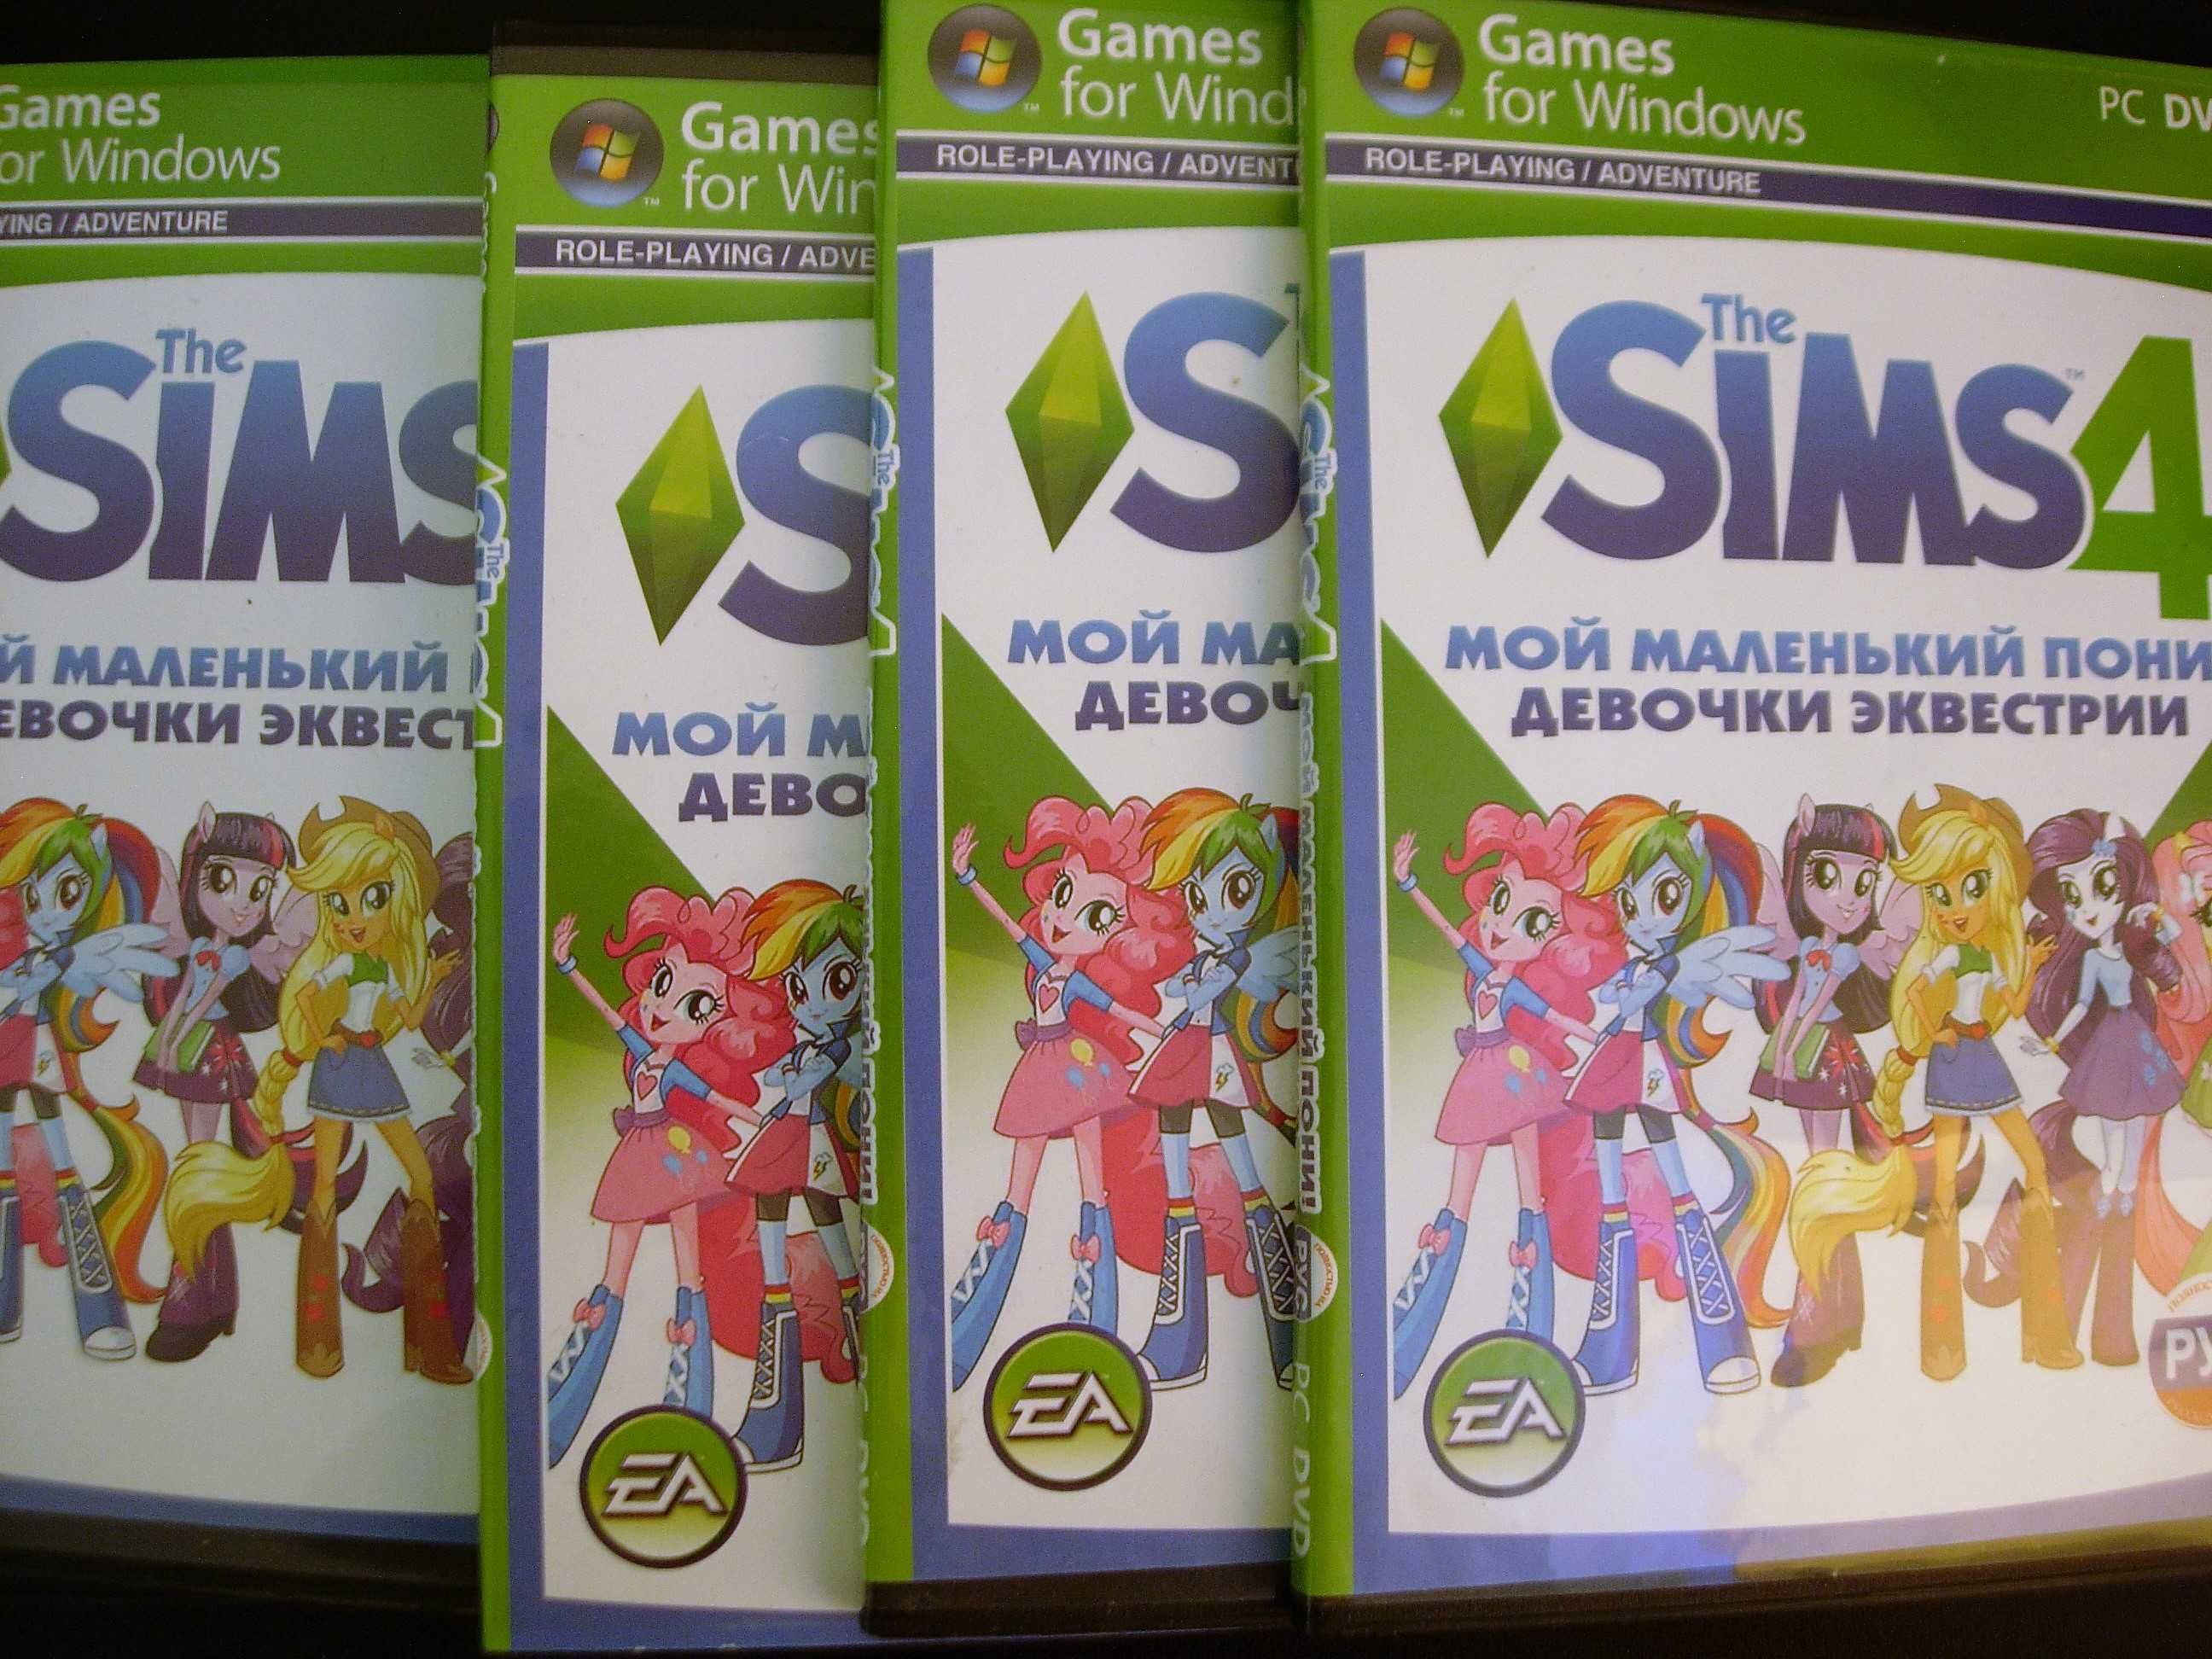 The Sims 4. Мой маленький пони. PC-DVD. Новый выпуск